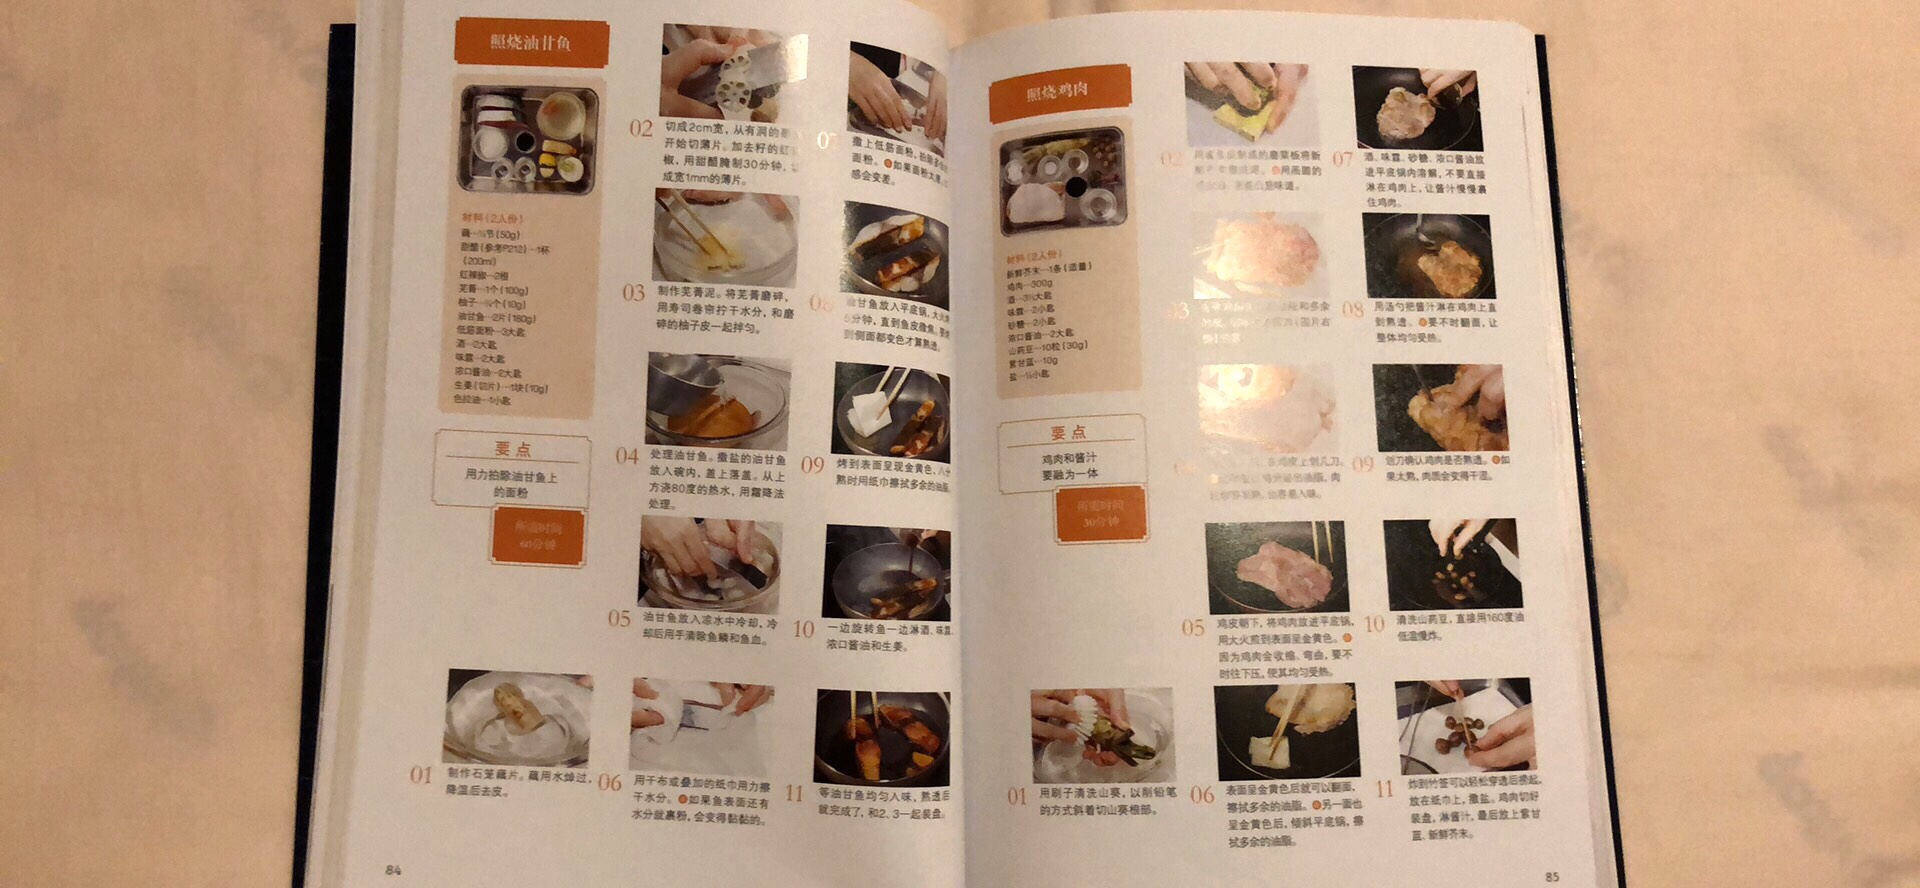 不得不说，日本人写的菜谱真的是够细致的，咱从西式、中式到日式，各种菜谱都买了一份，这份写的最详细，从食材、刀工、做法、摆盘到锅的保养，面面俱到。可惜有些食材买不到，先把中餐搞定再说，其它的以后有空慢慢研究。